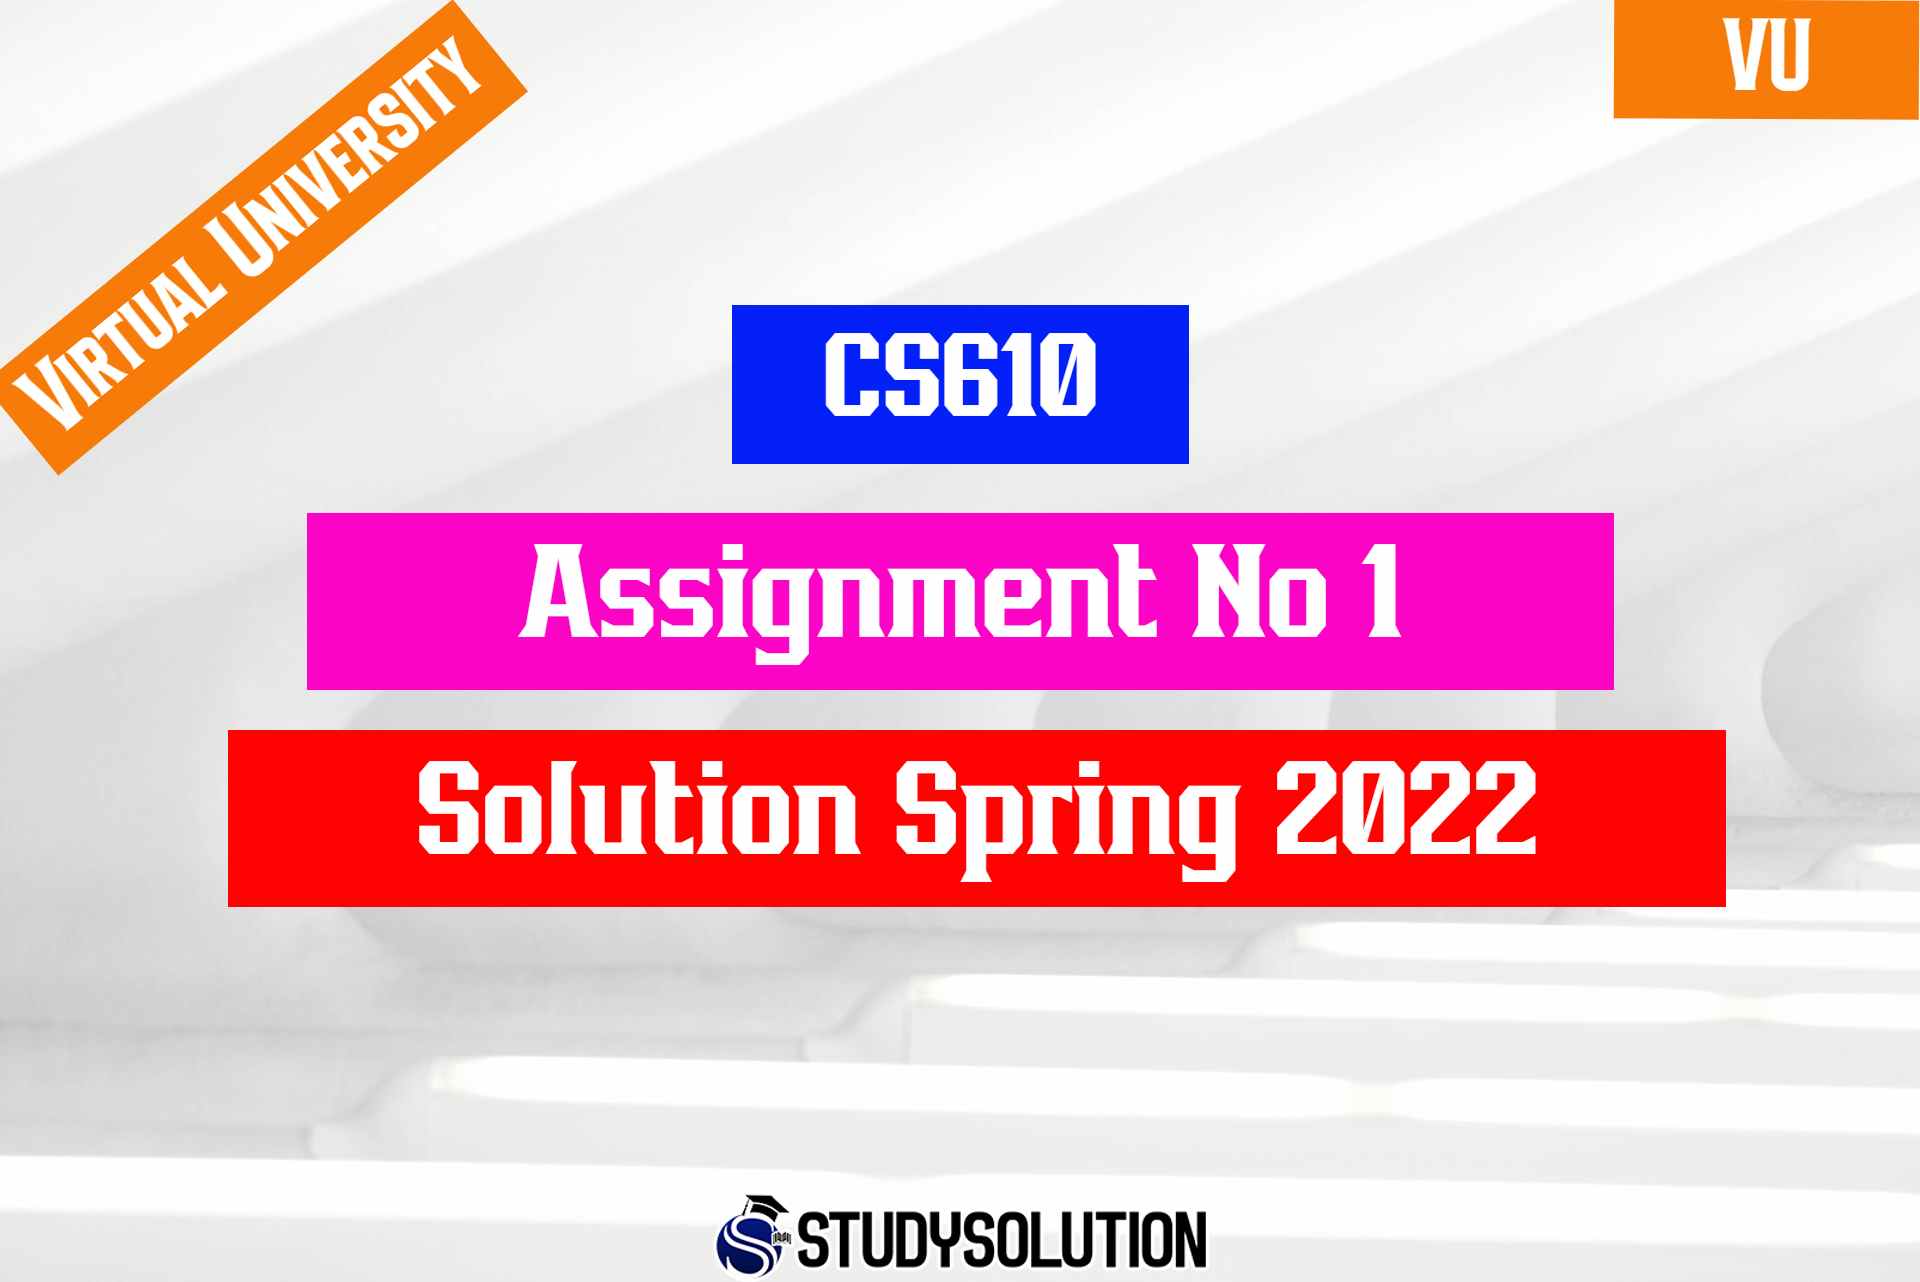 CS610 Assignment No 1 Solution Spring 2022